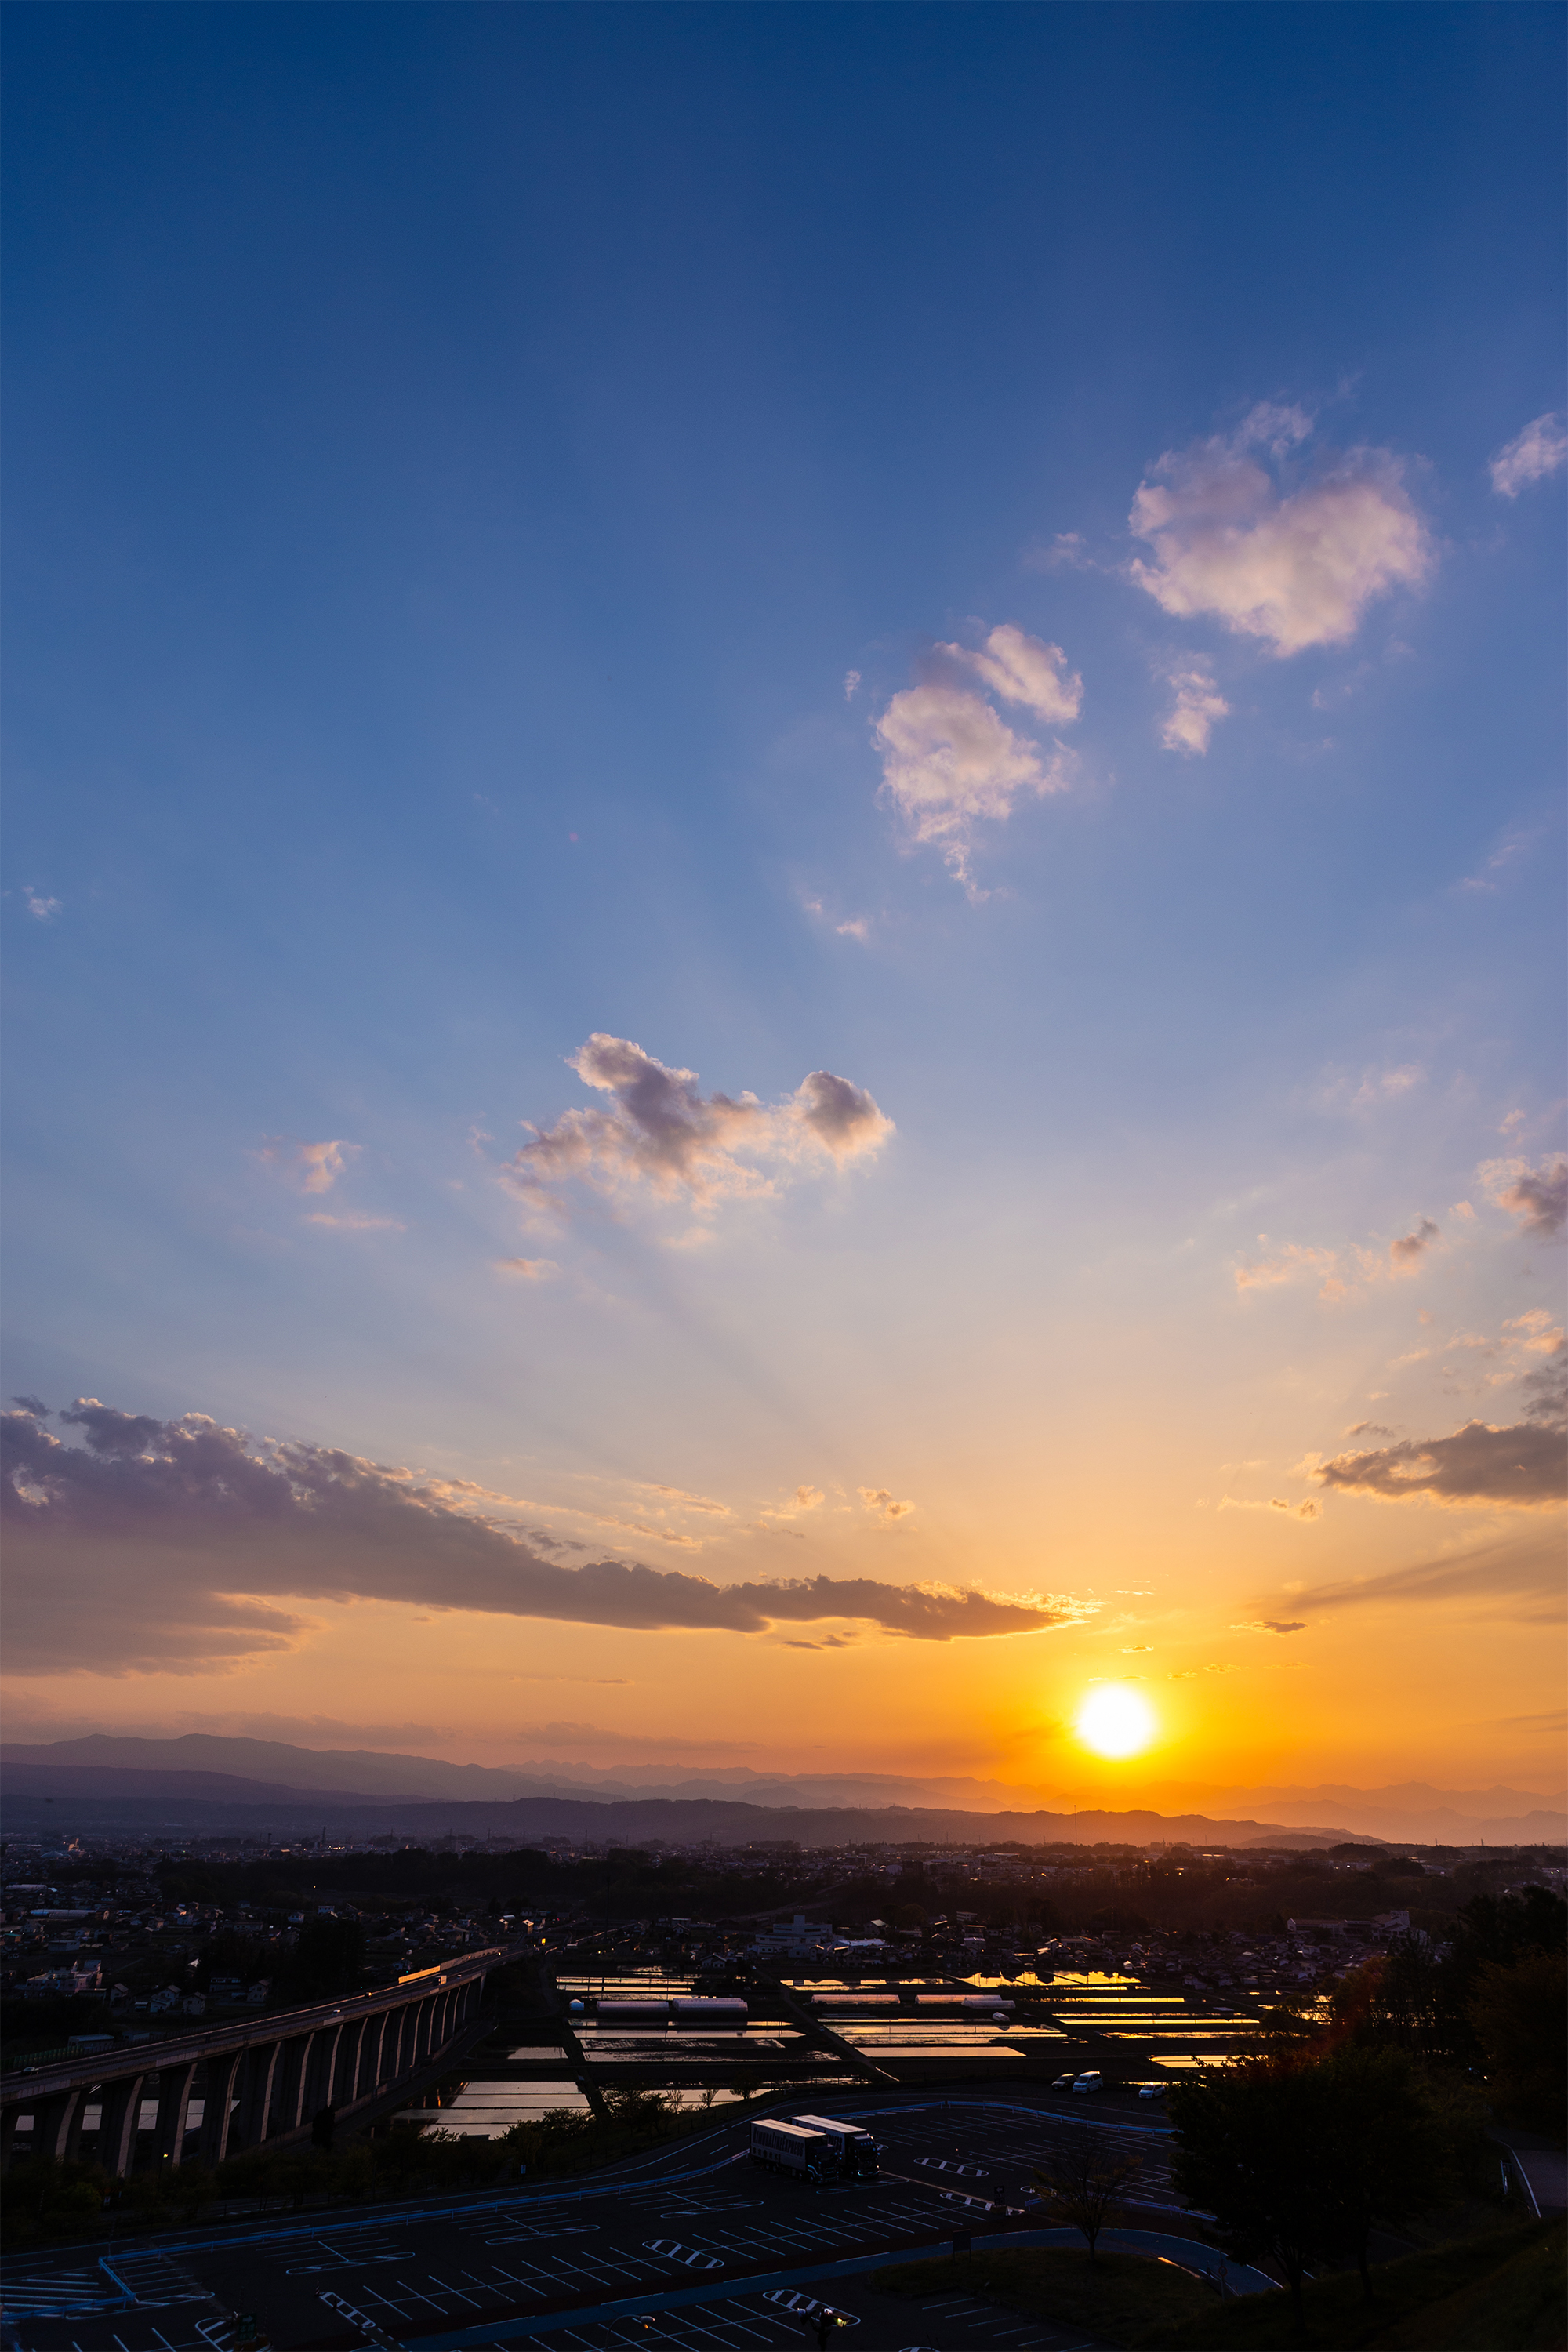 水田に反射する夕日 夕焼け 03 無料の高画質フリー写真素材 イメージズラボ